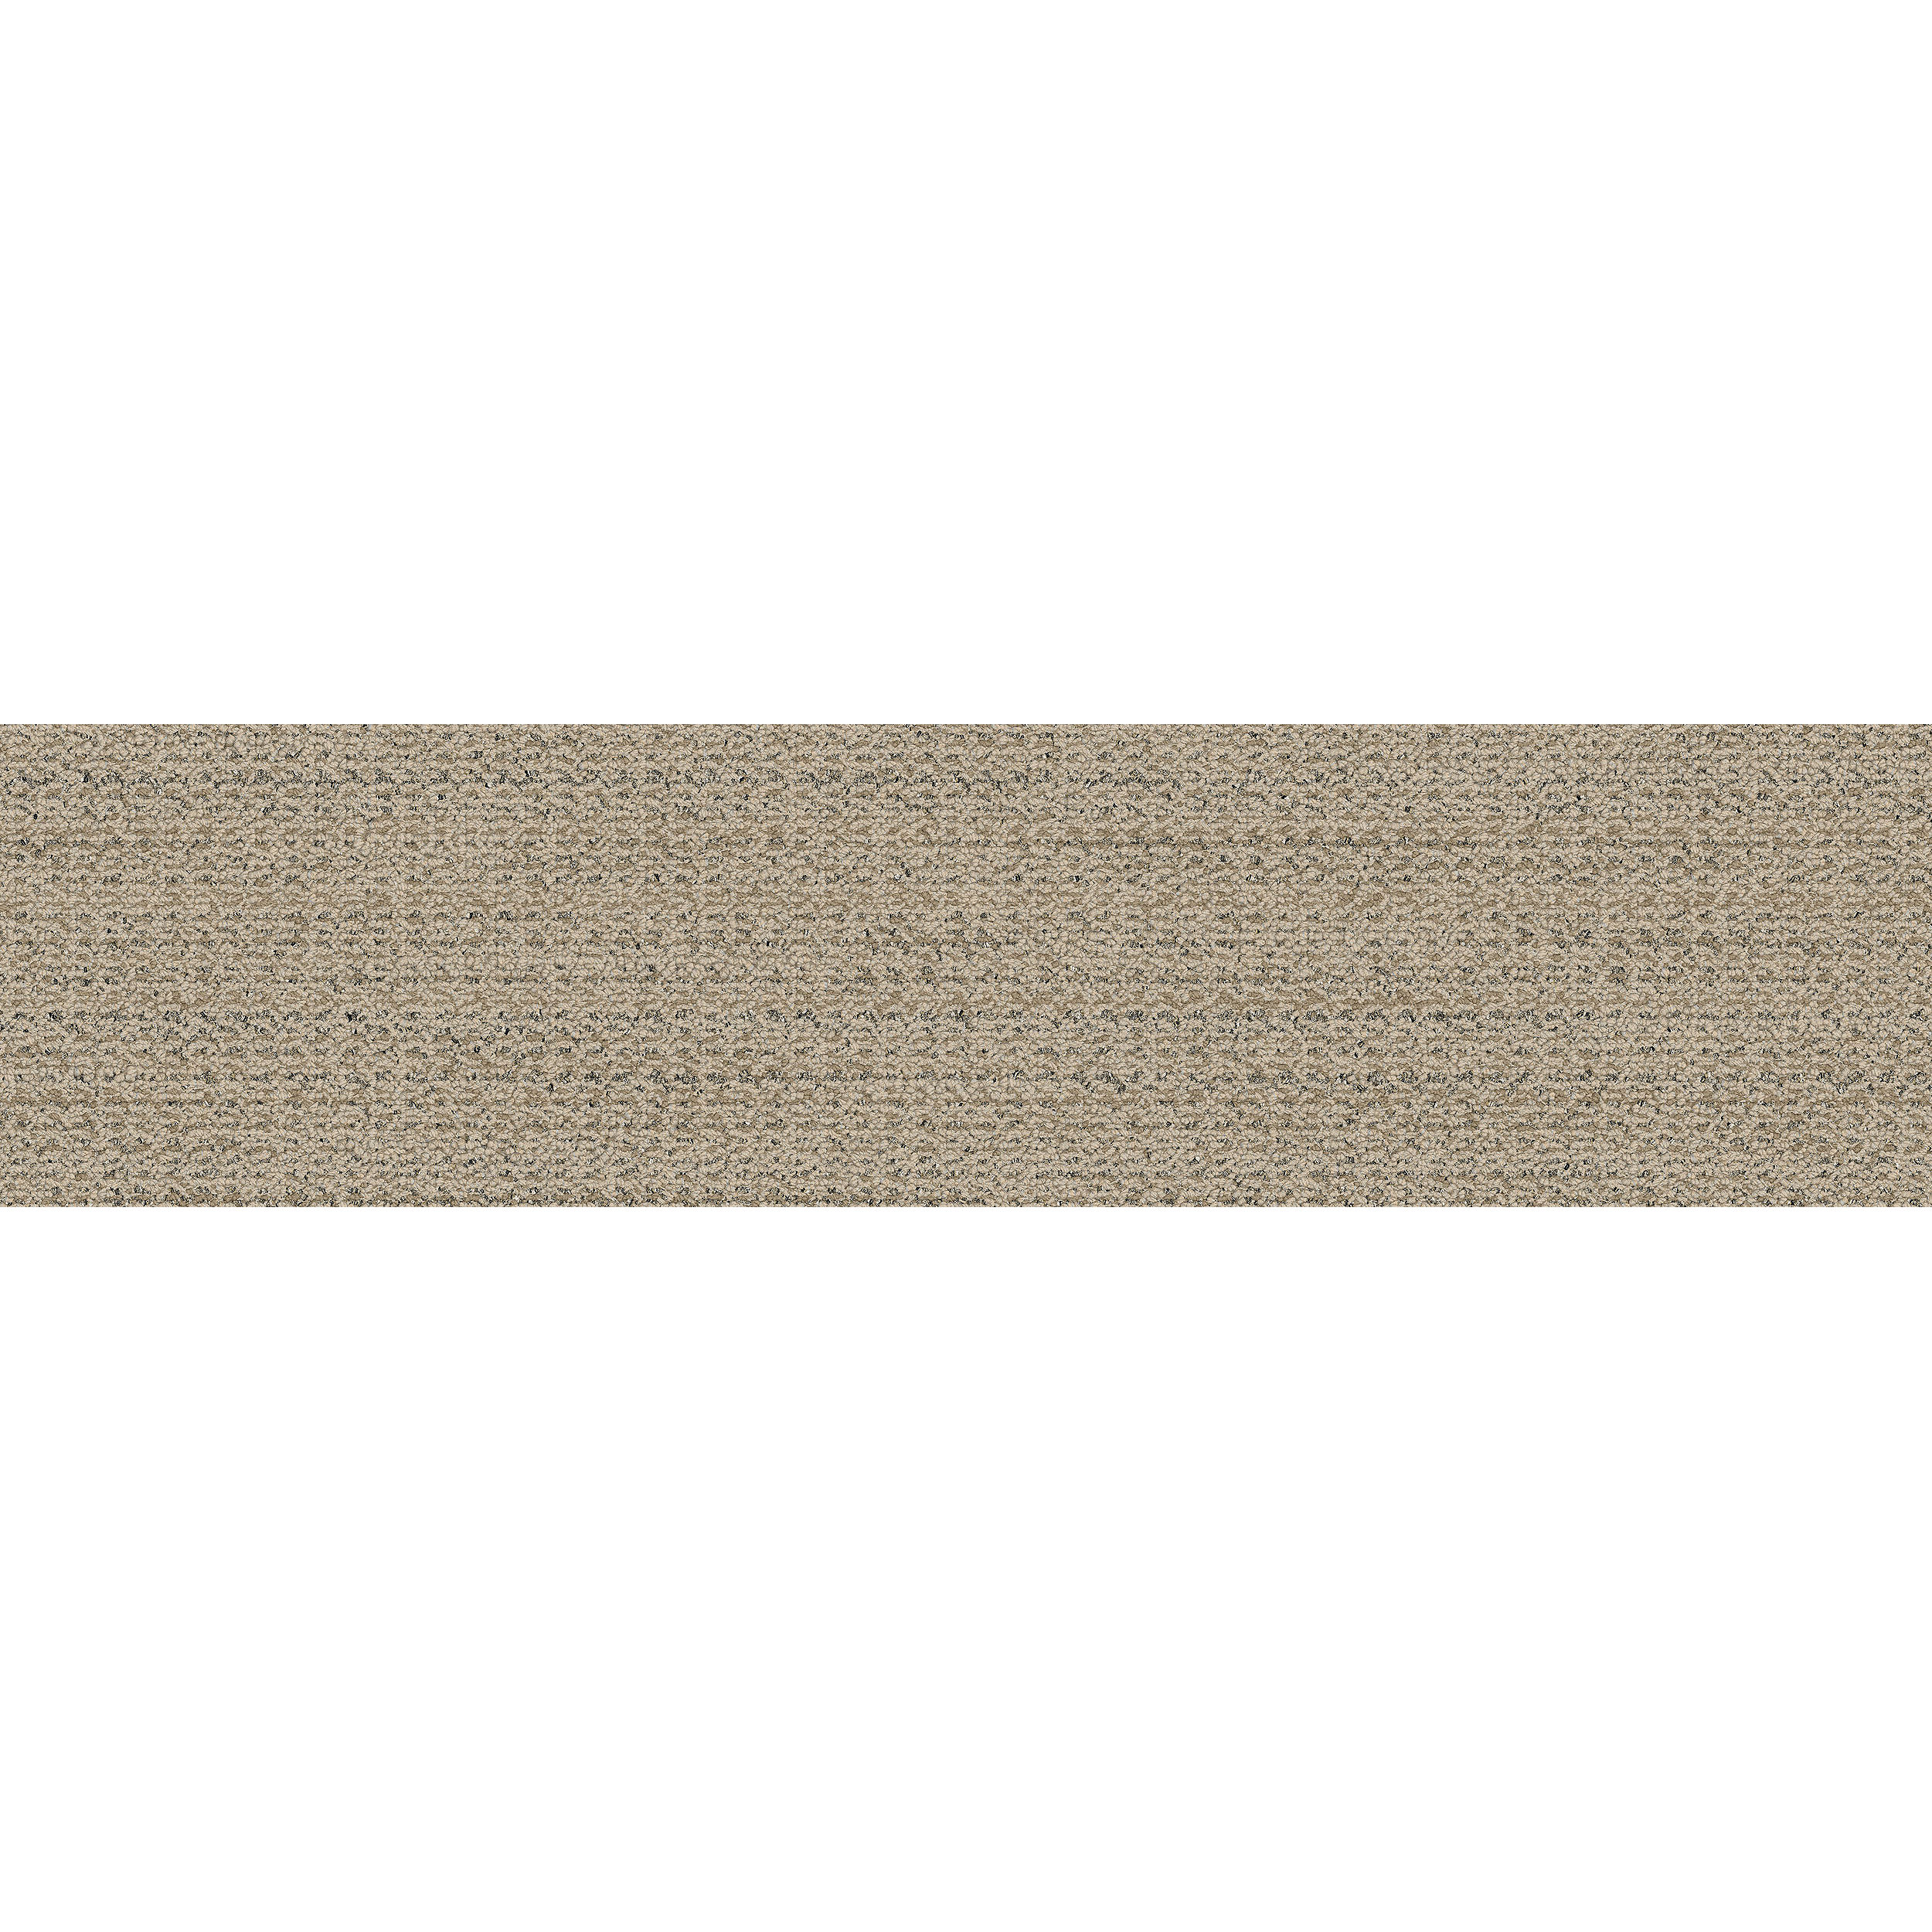 WW870 Carpet Tile In Raffia Weft image number 9